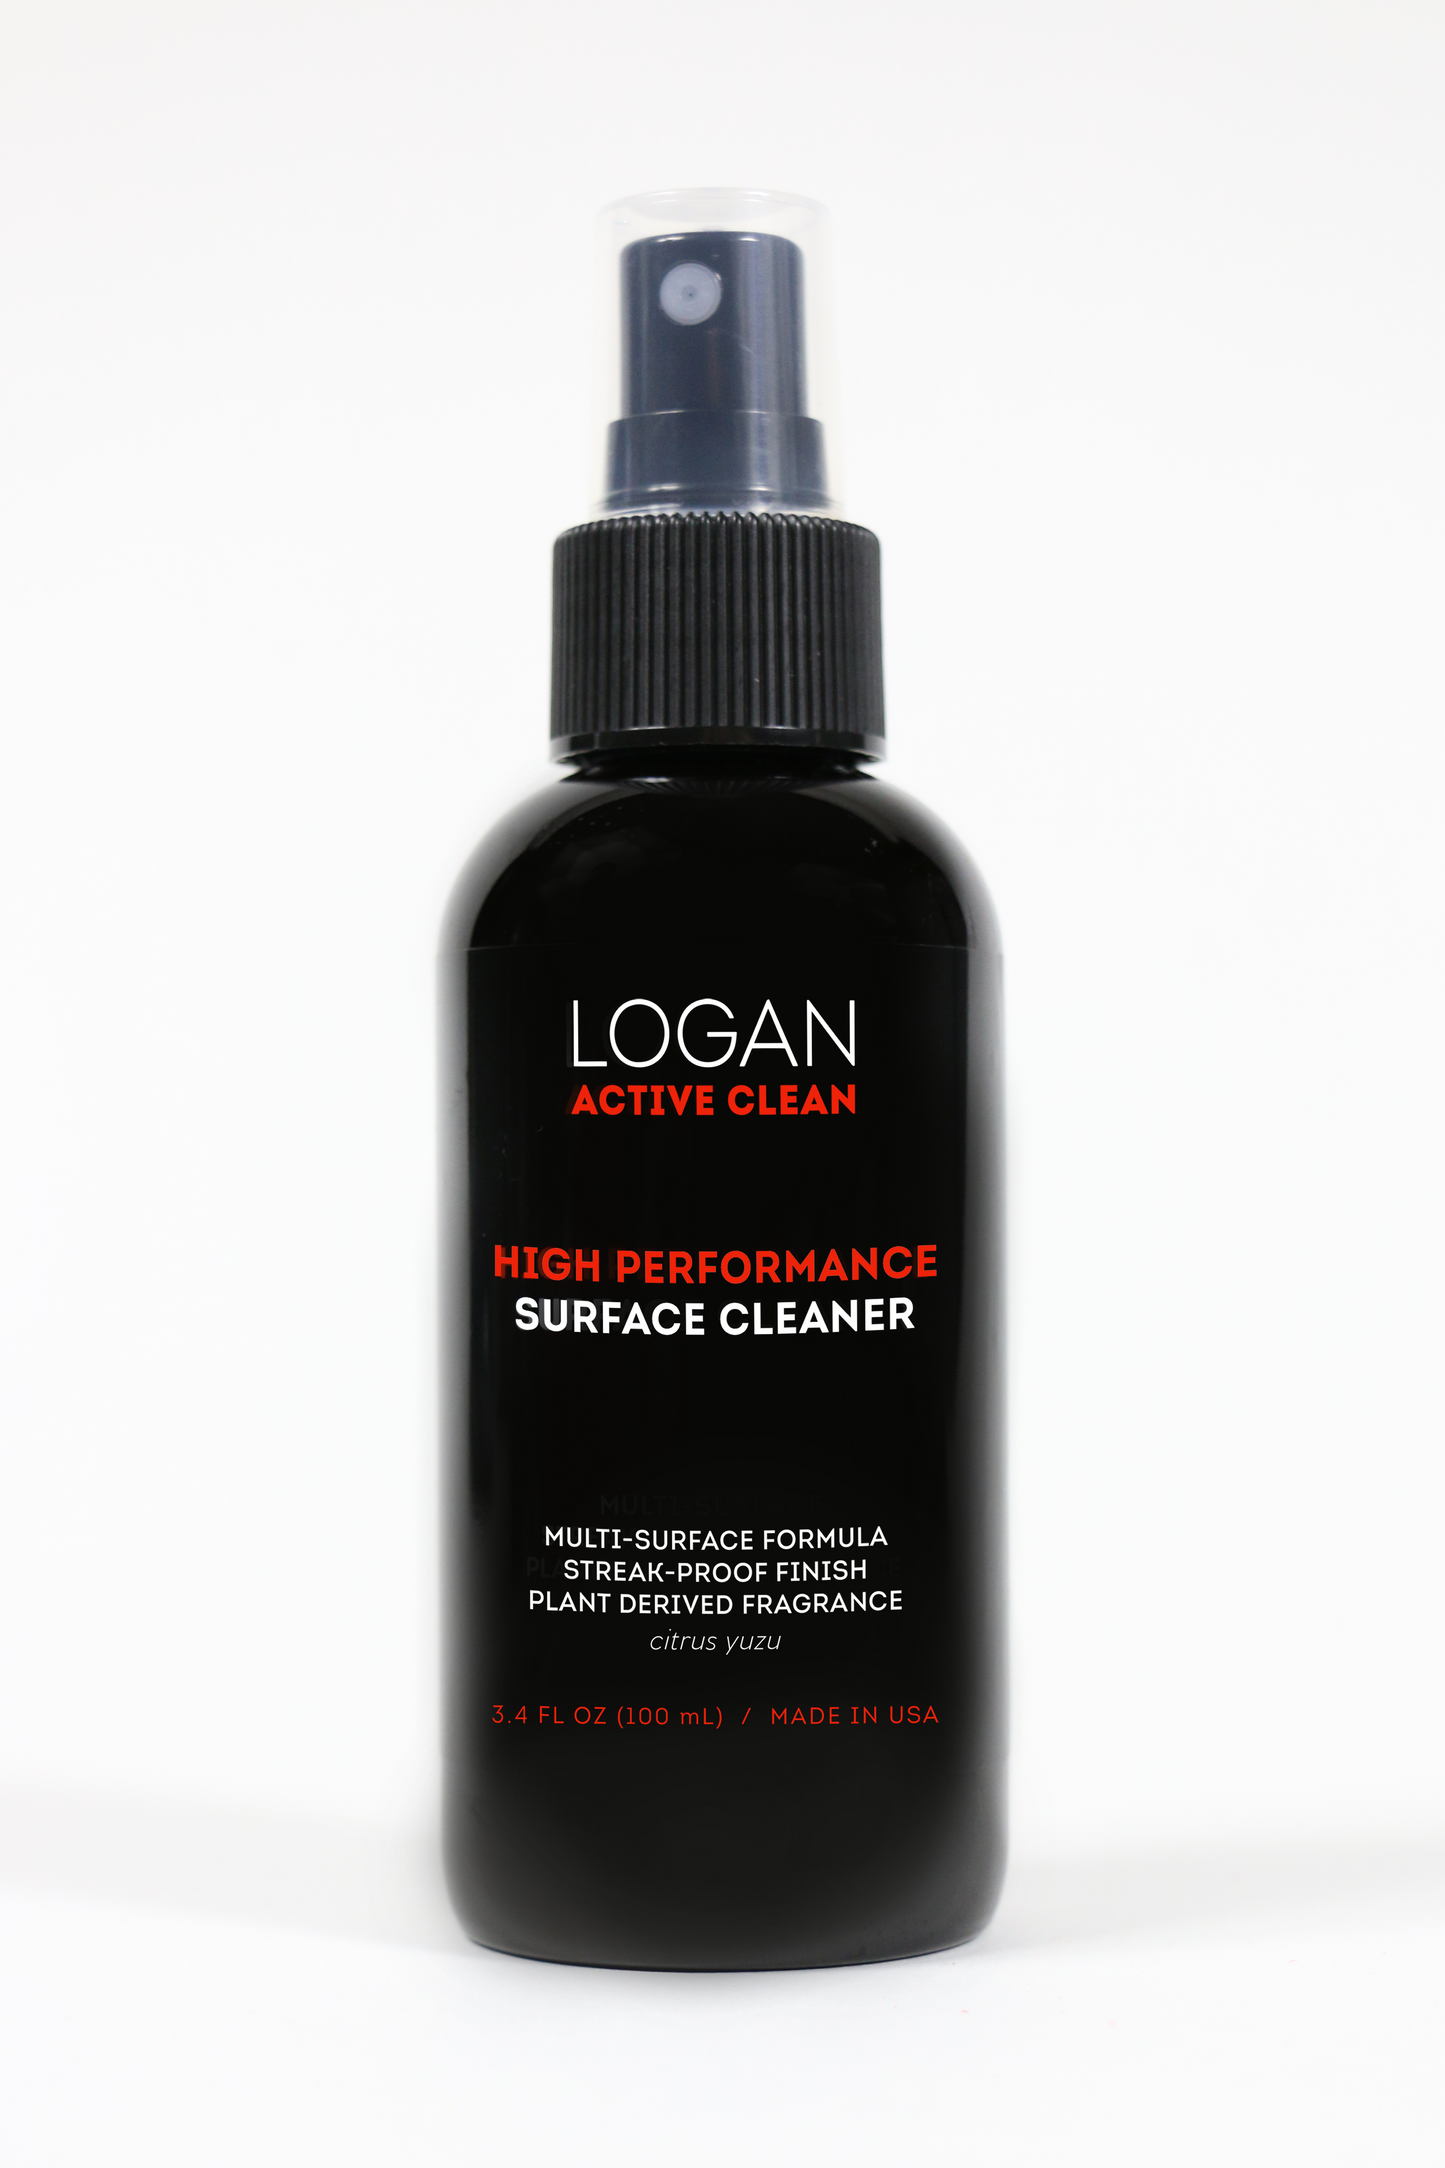 Logan Active Clean Travel Kit - FLASH SALE!